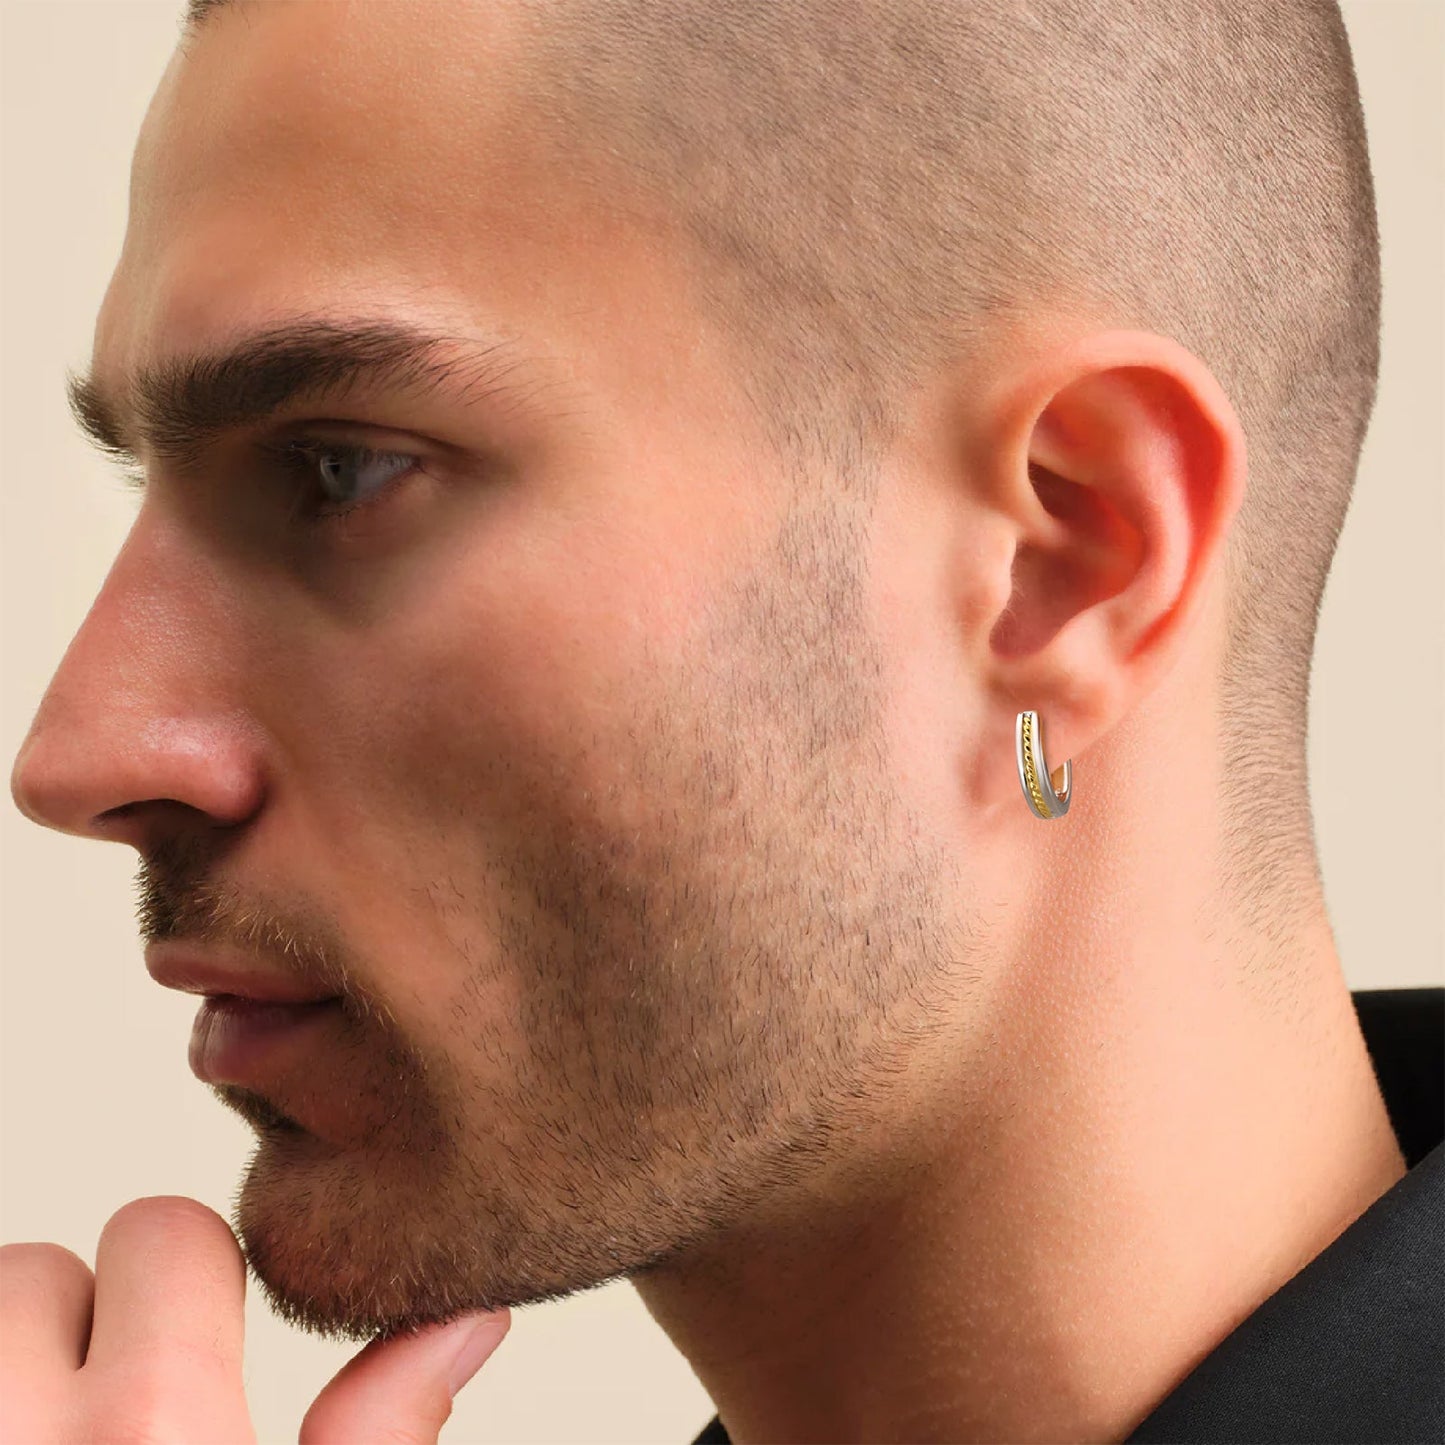 Scarabeaus 15mm Black & White Hoop Earrings for Men